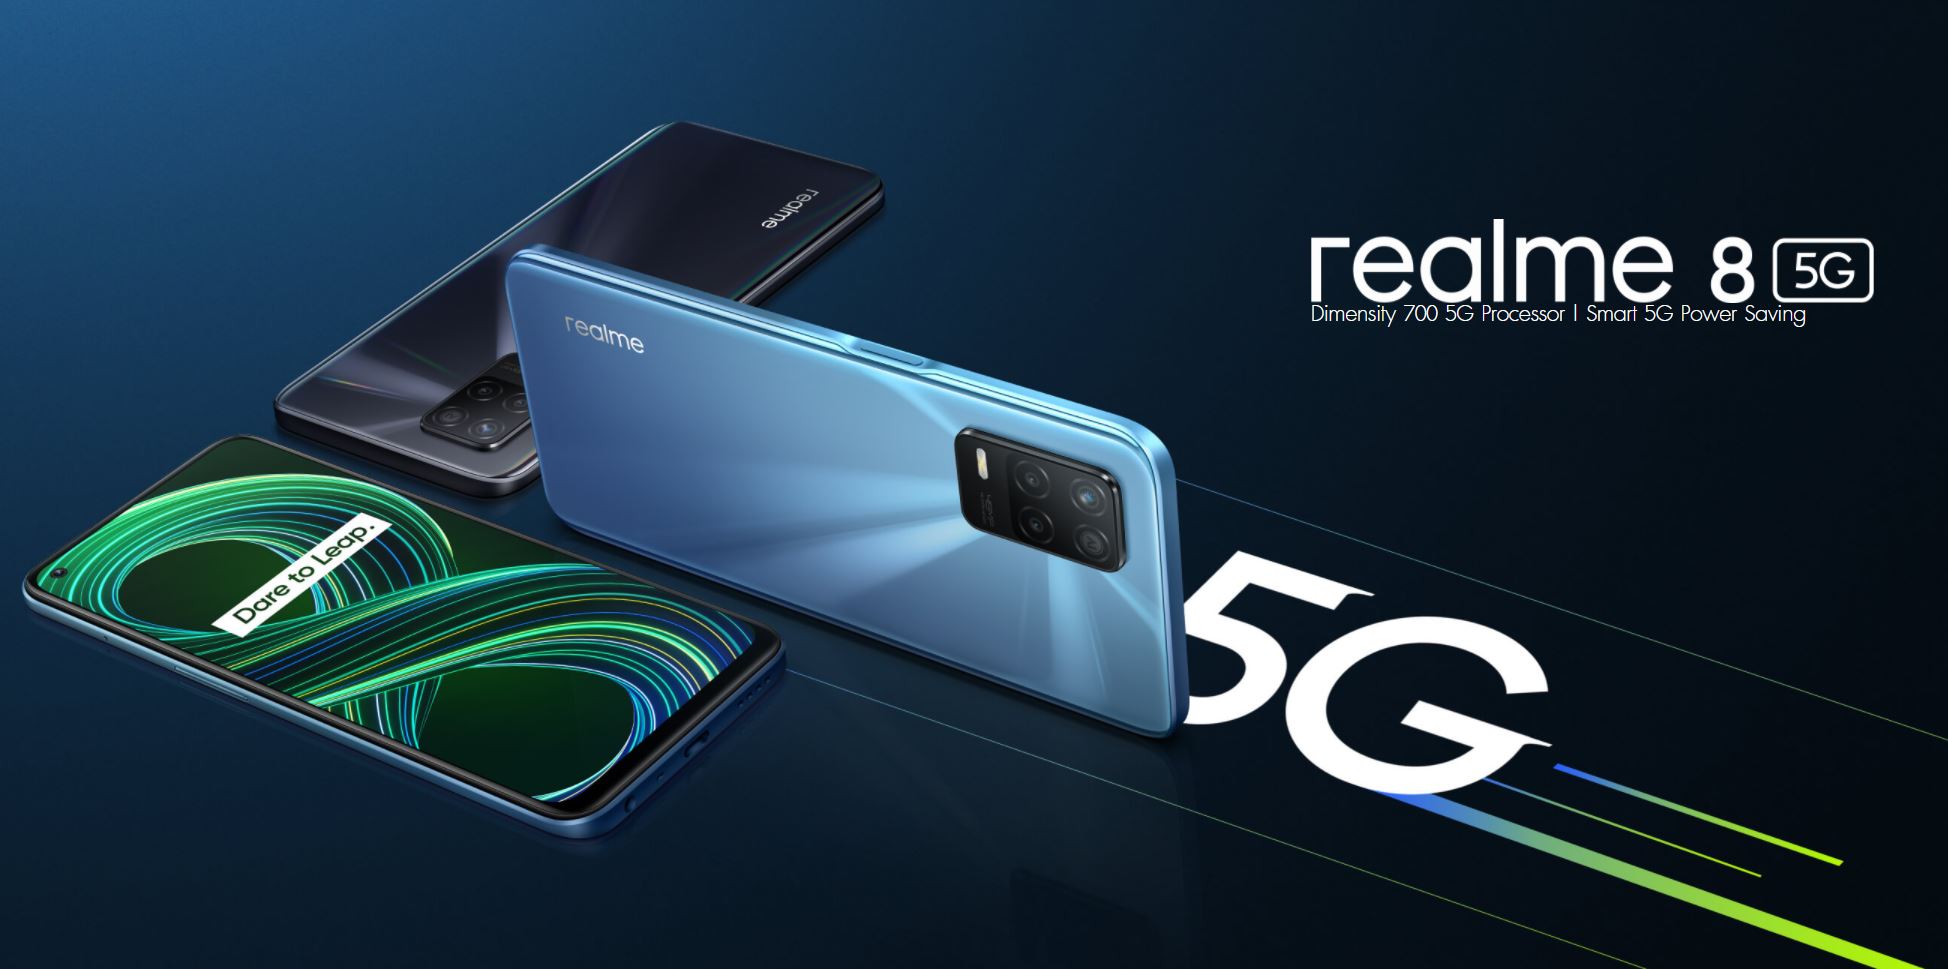 Le Realme 8 5G est disponible au prix réduit de 254 $ sur AliExpress